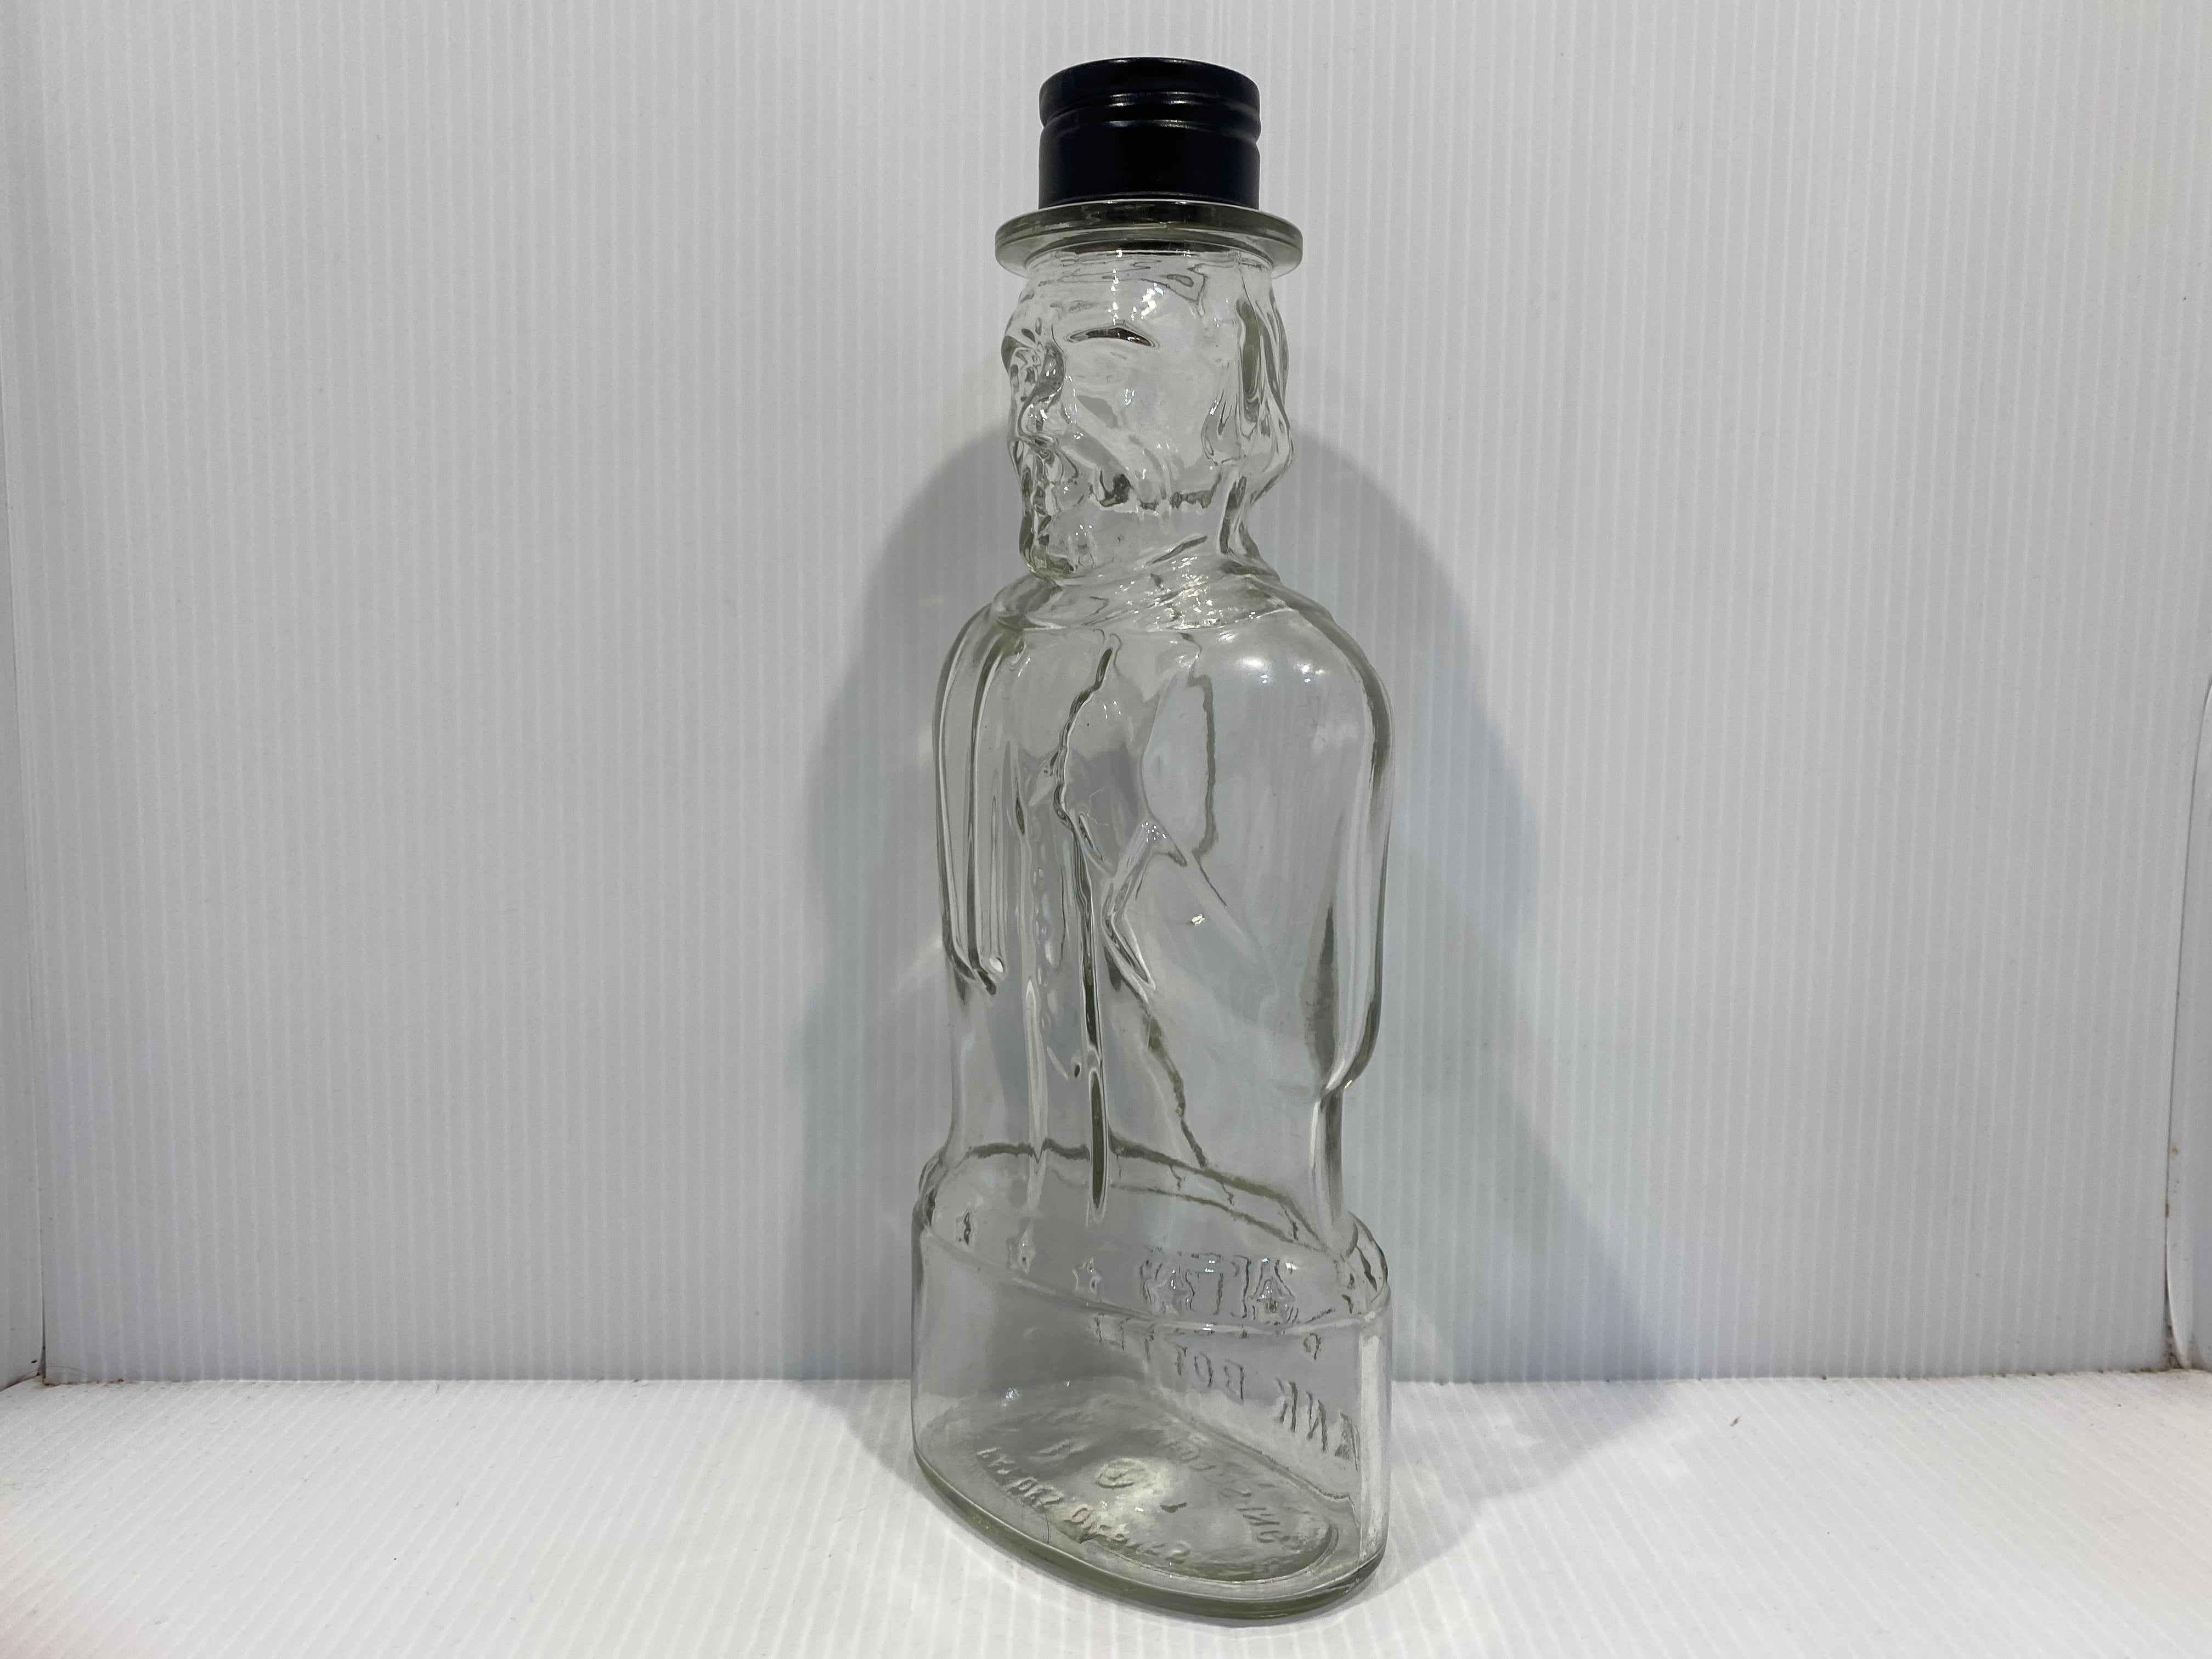 President Abraham Lincoln Bank Bottle Glass